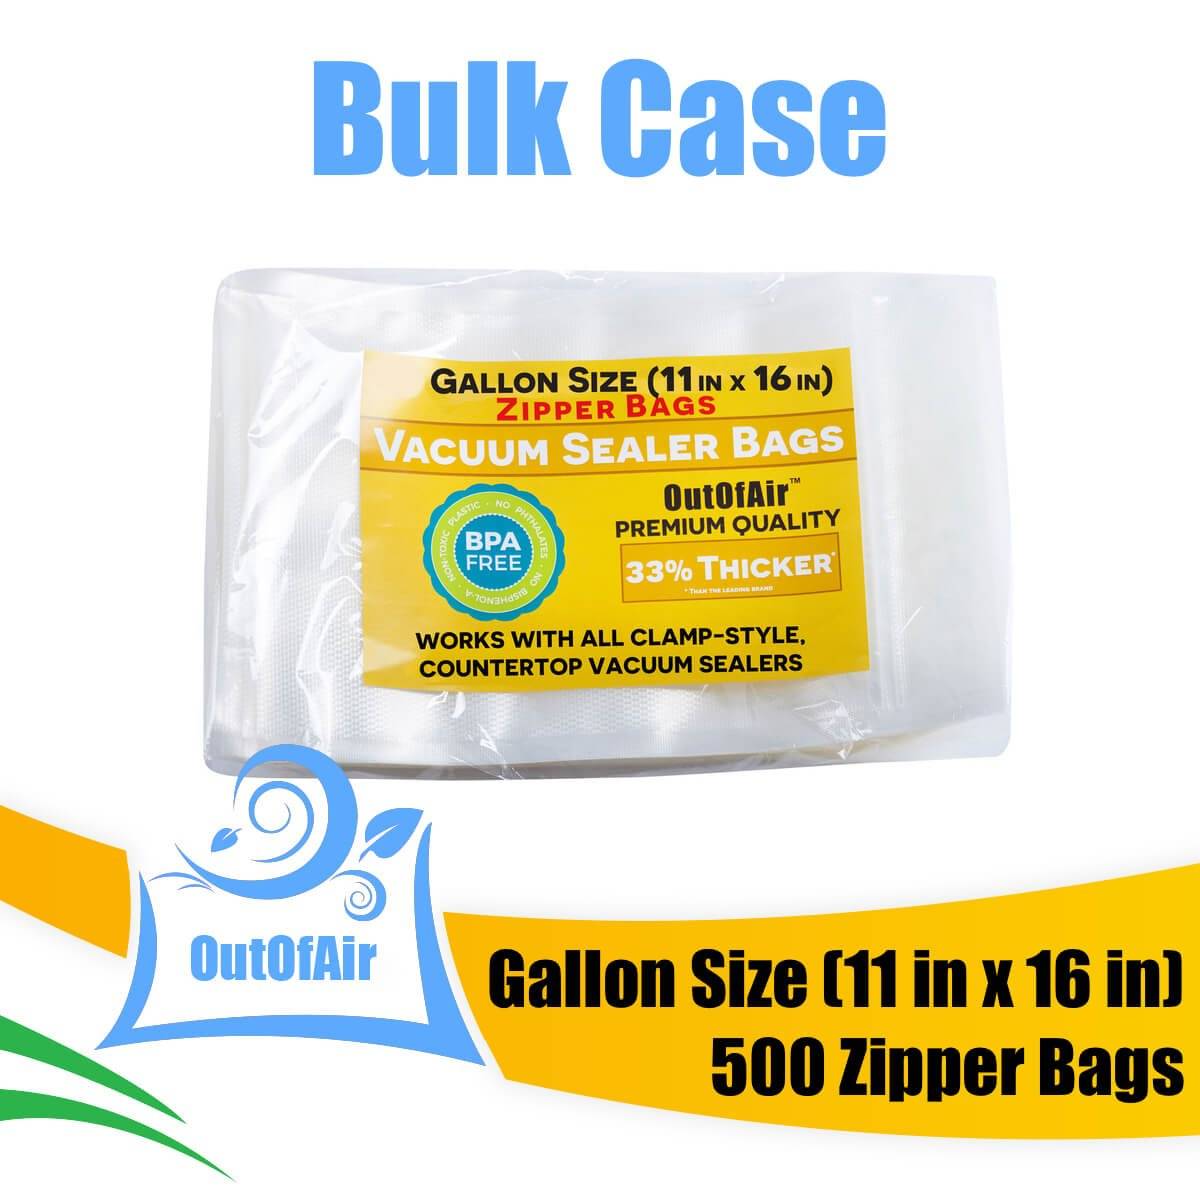 FOYO 18-quart vacuum zipper bag, vacuum-sealed food storage Quart